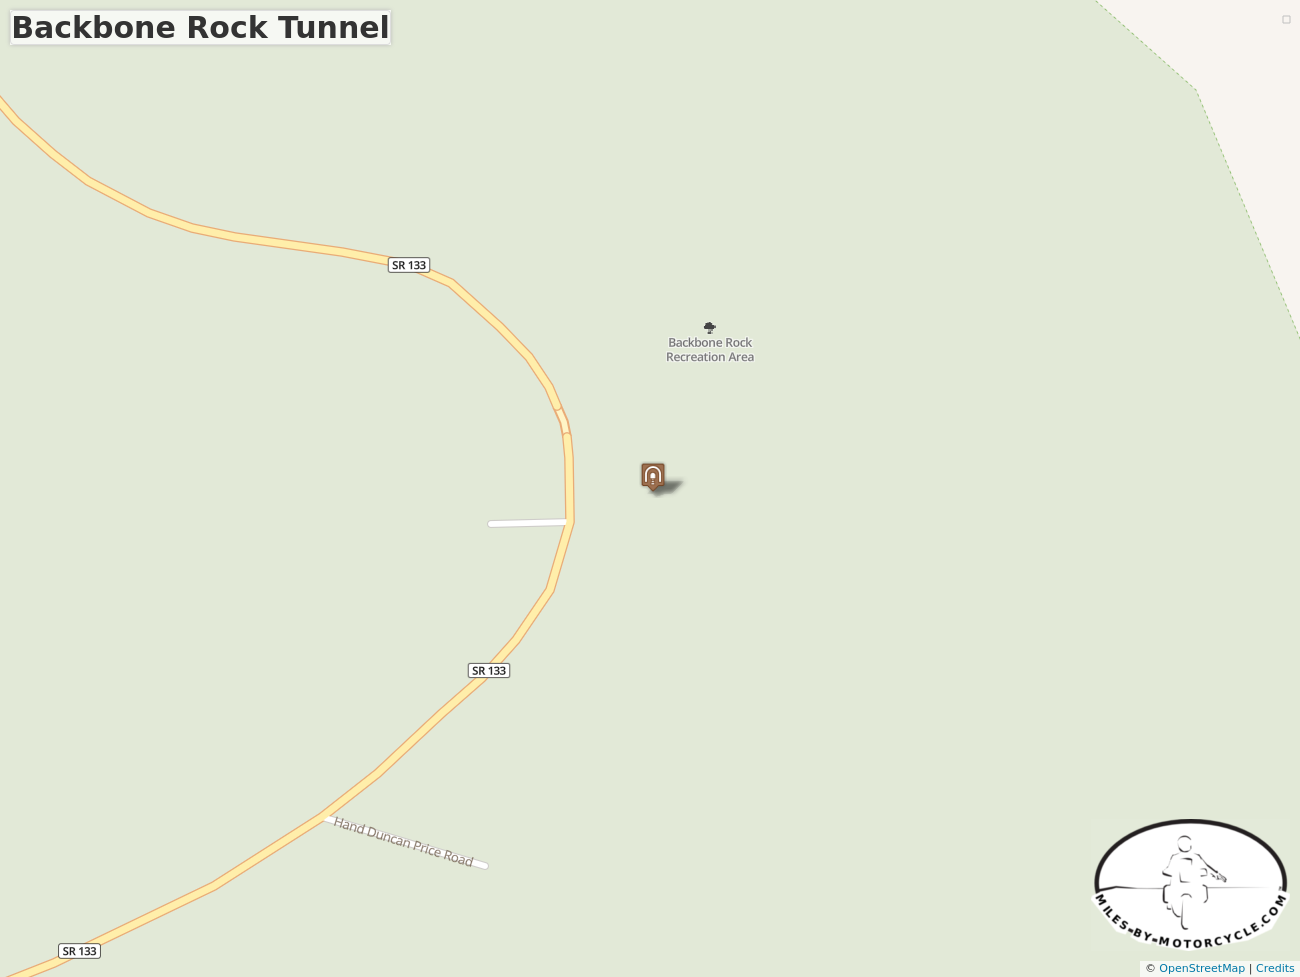 Backbone Rock Tunnel